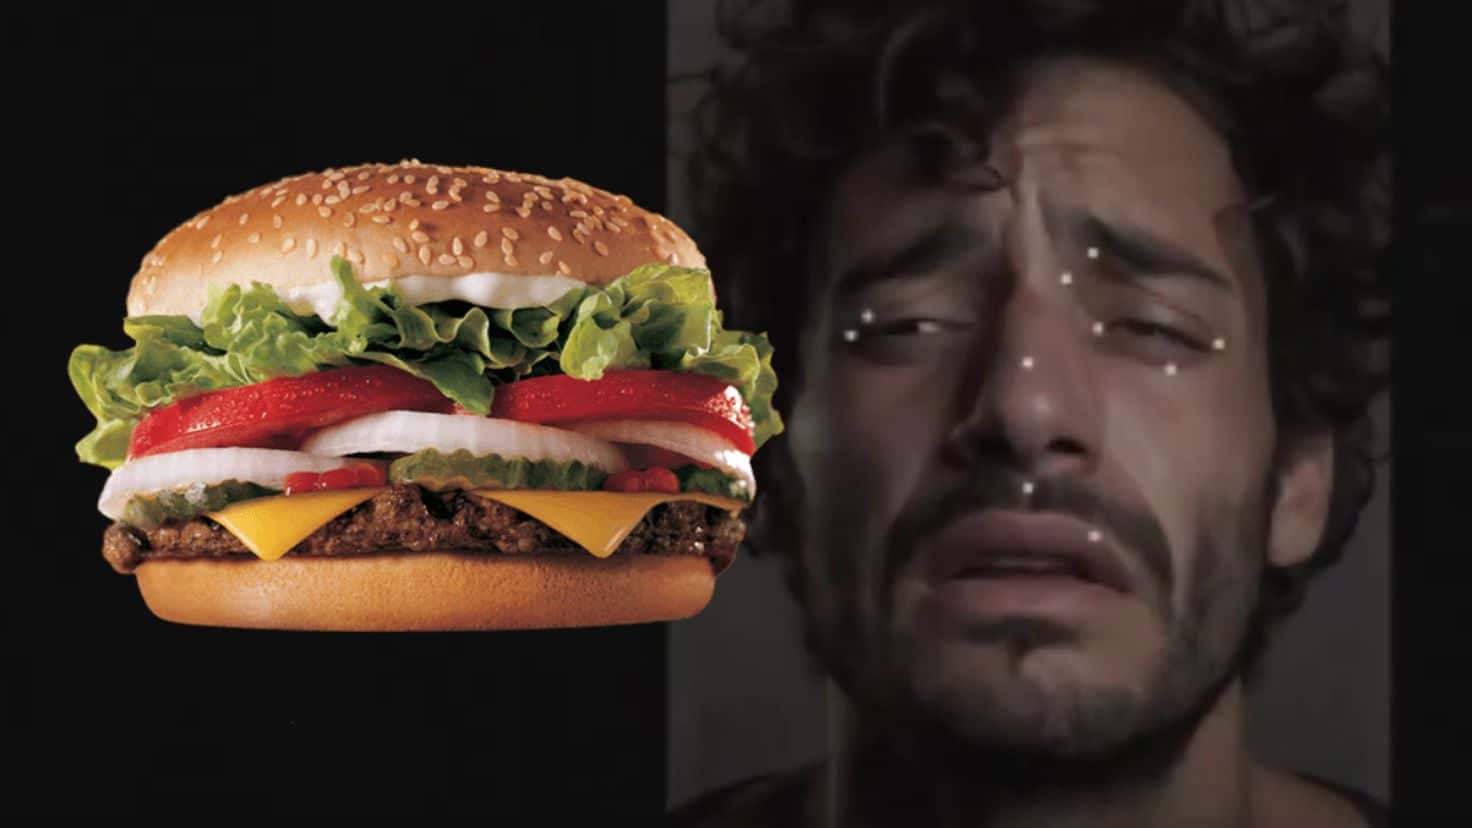 La inteligencia artificial de Burger King evalua si estas resacoso